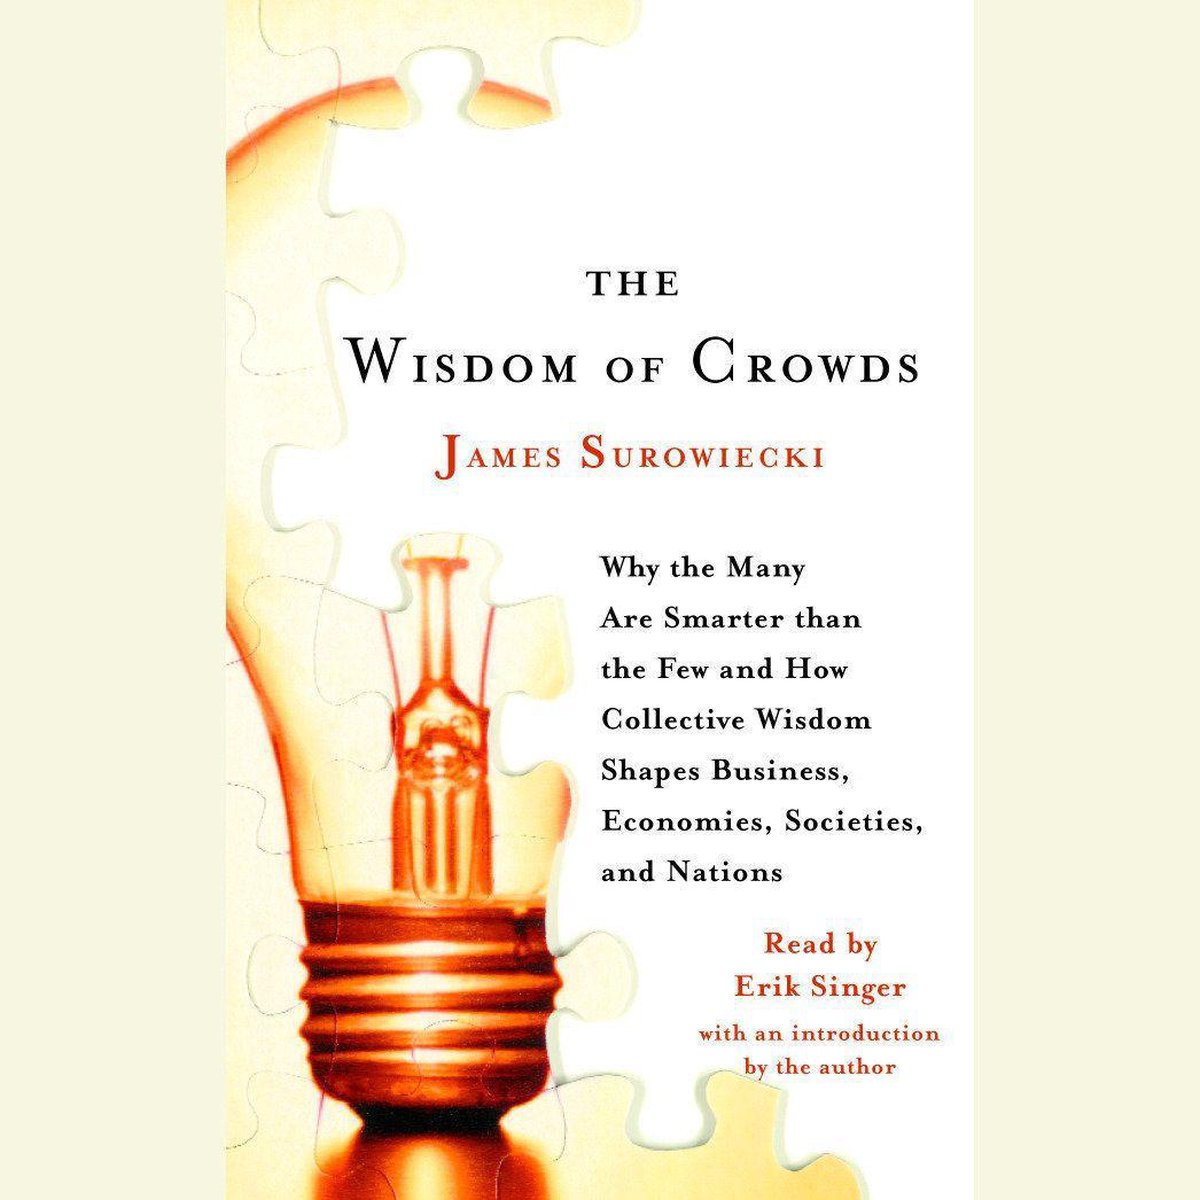 The Wisdom of Crowds - James Surowiecki